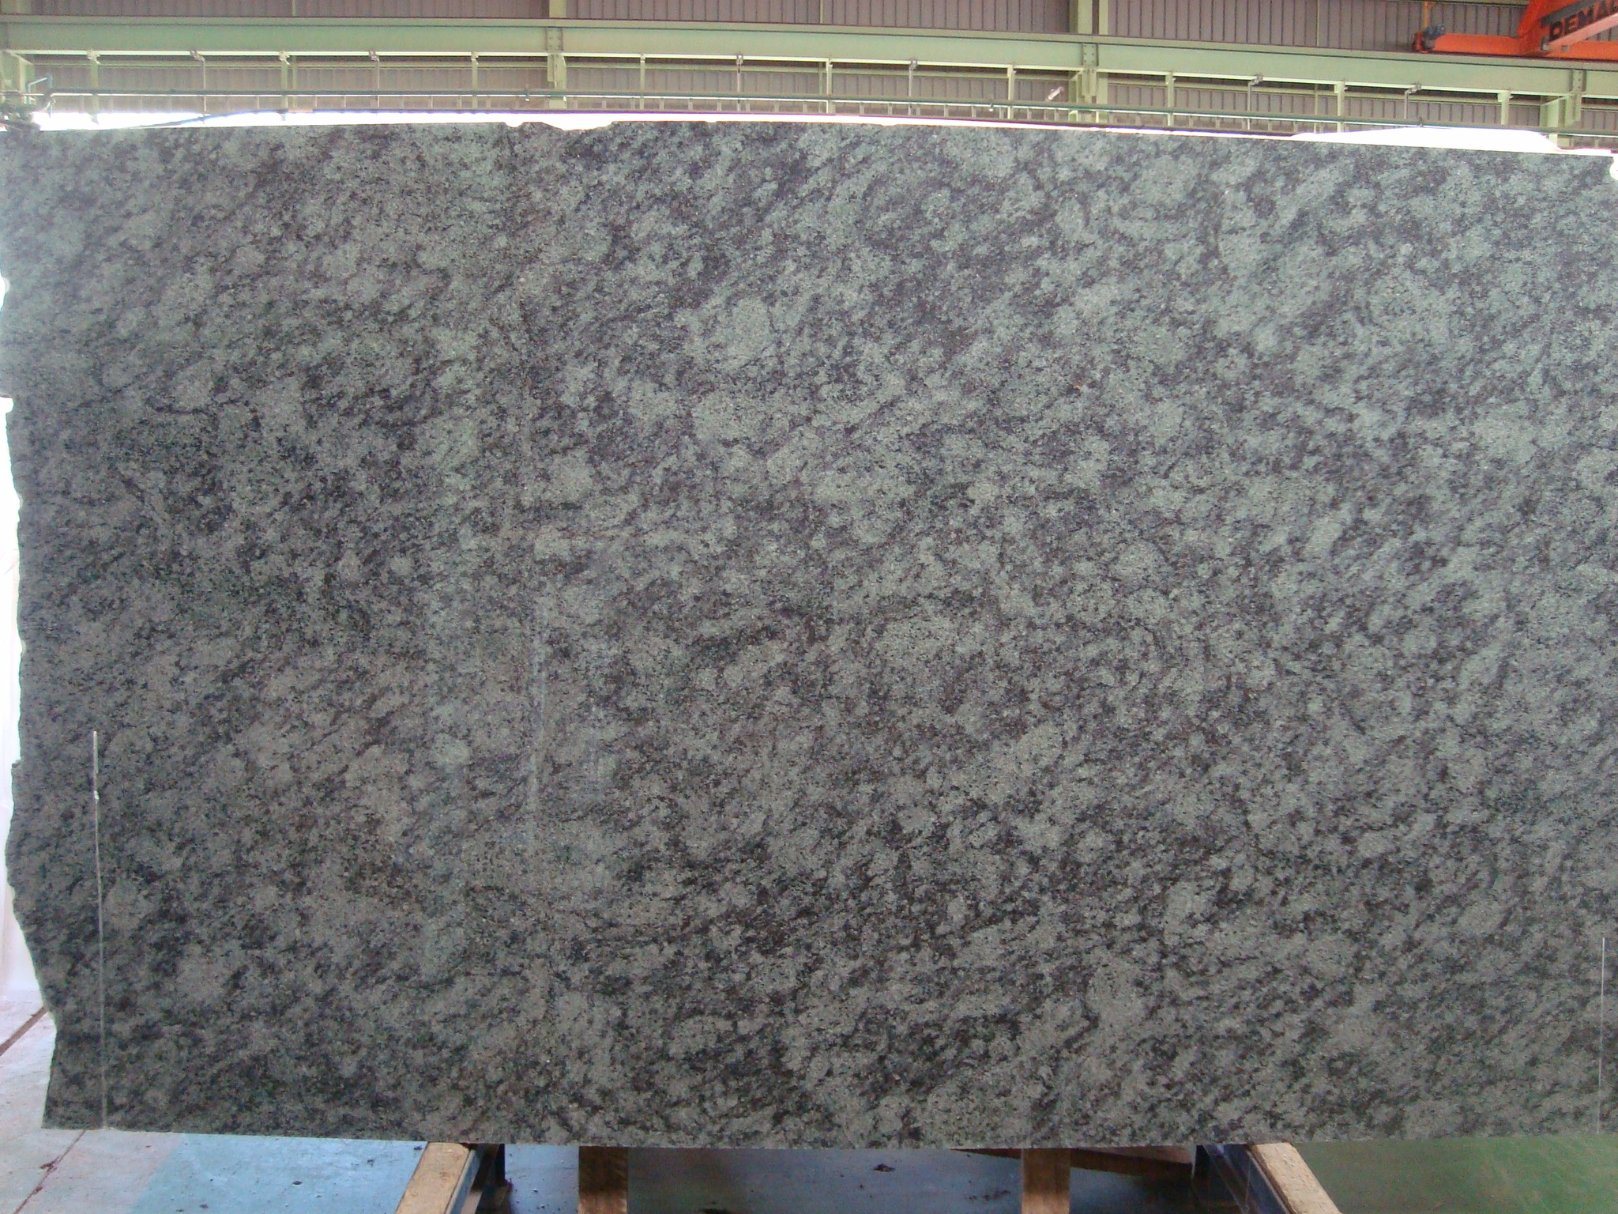 Oliver Green Granite Slab for Kitchen/Bathroom/Wall/Floor